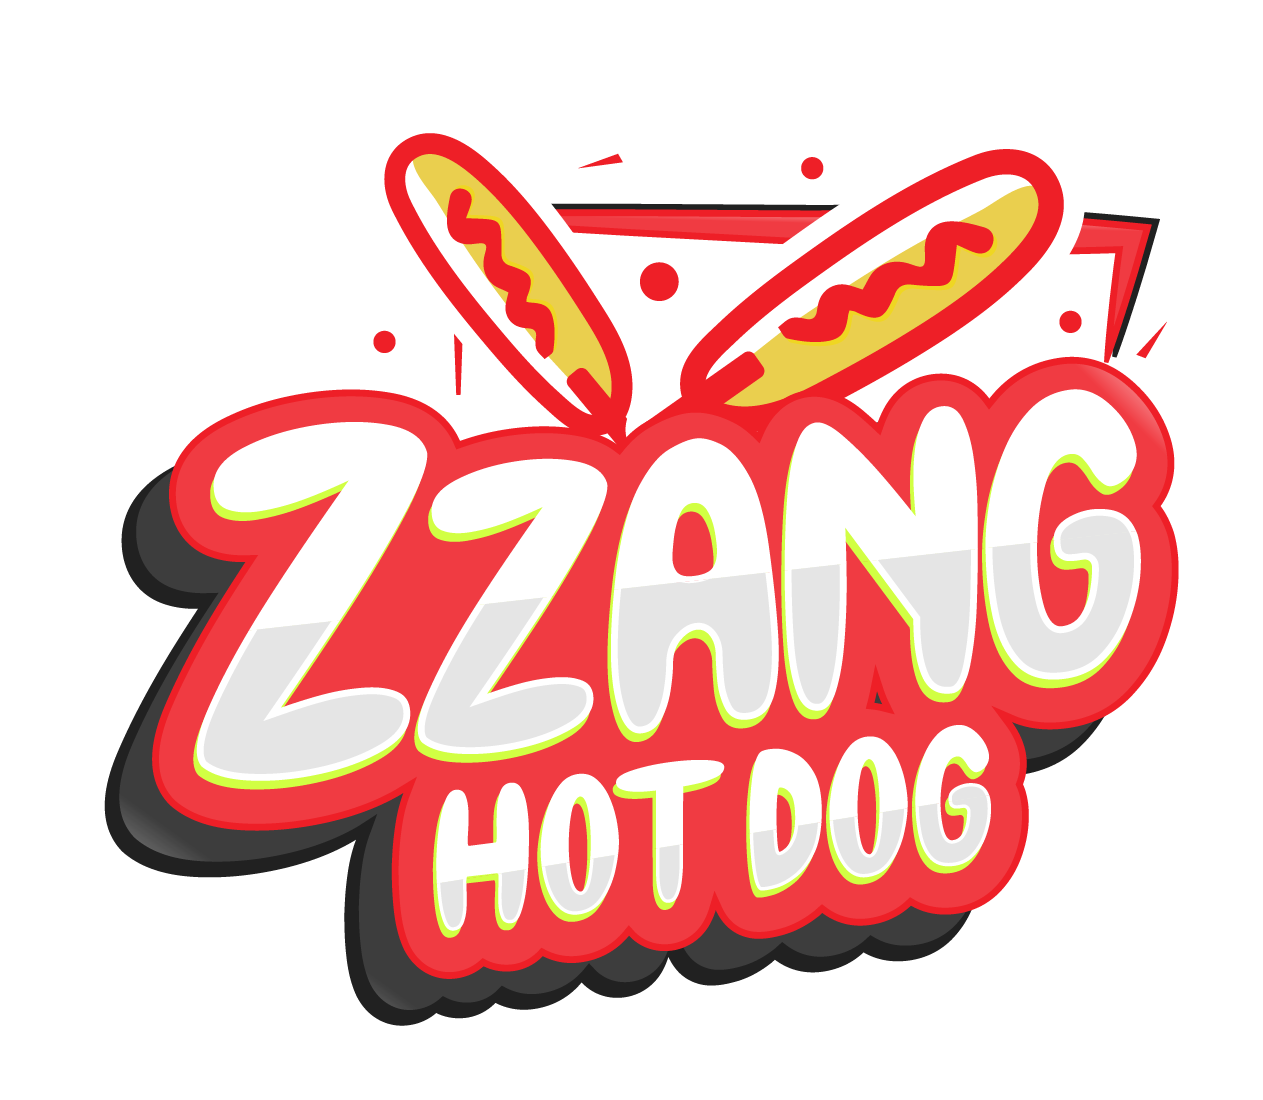 ZZanG Hot Dog